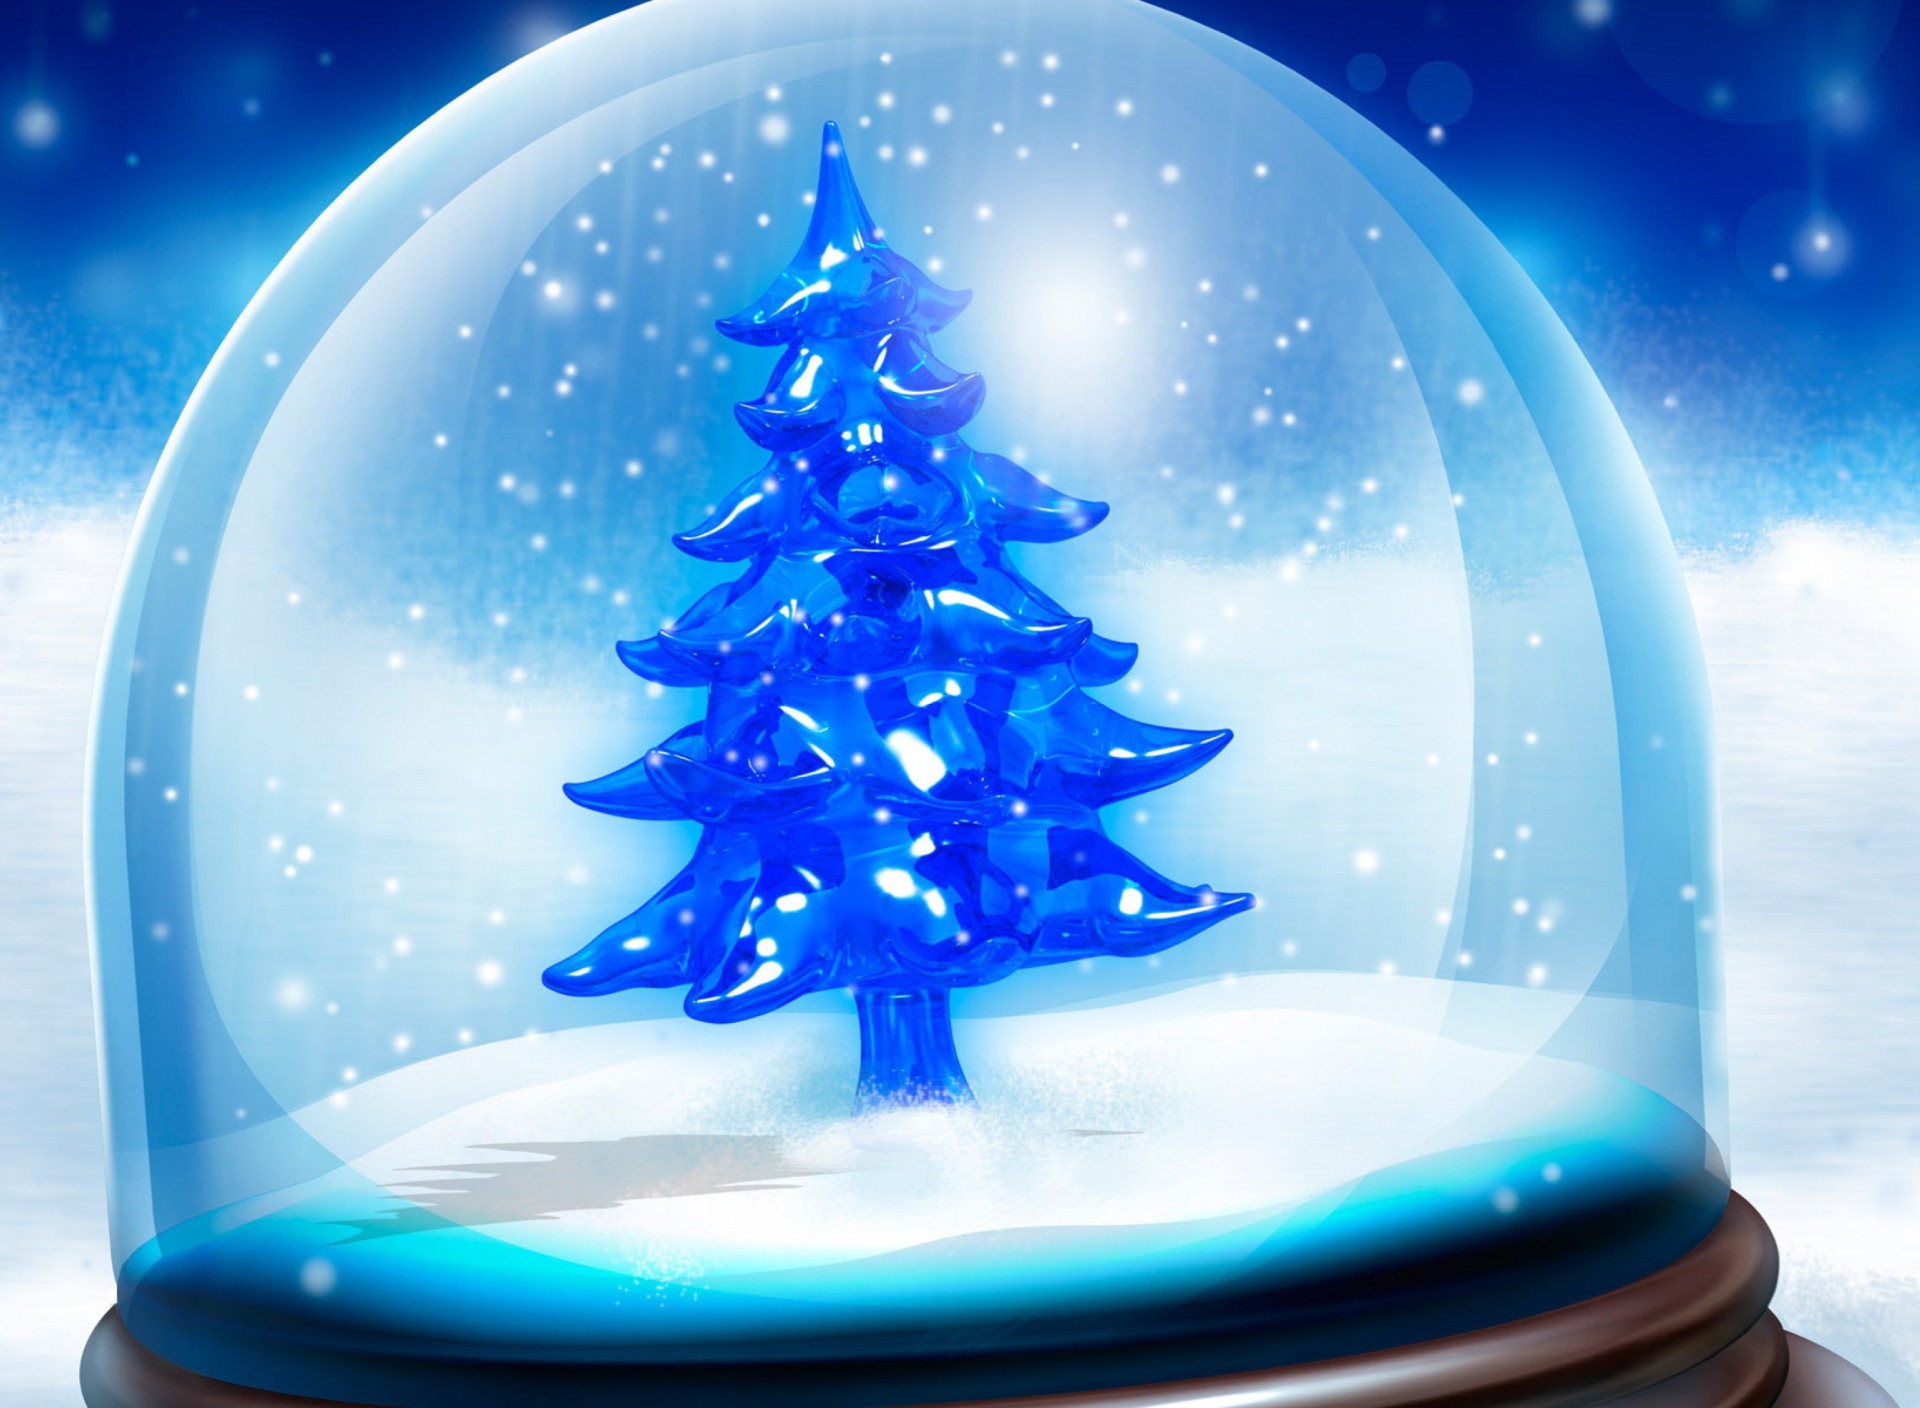 Обои Snowy Christmas Tree 1920x1408